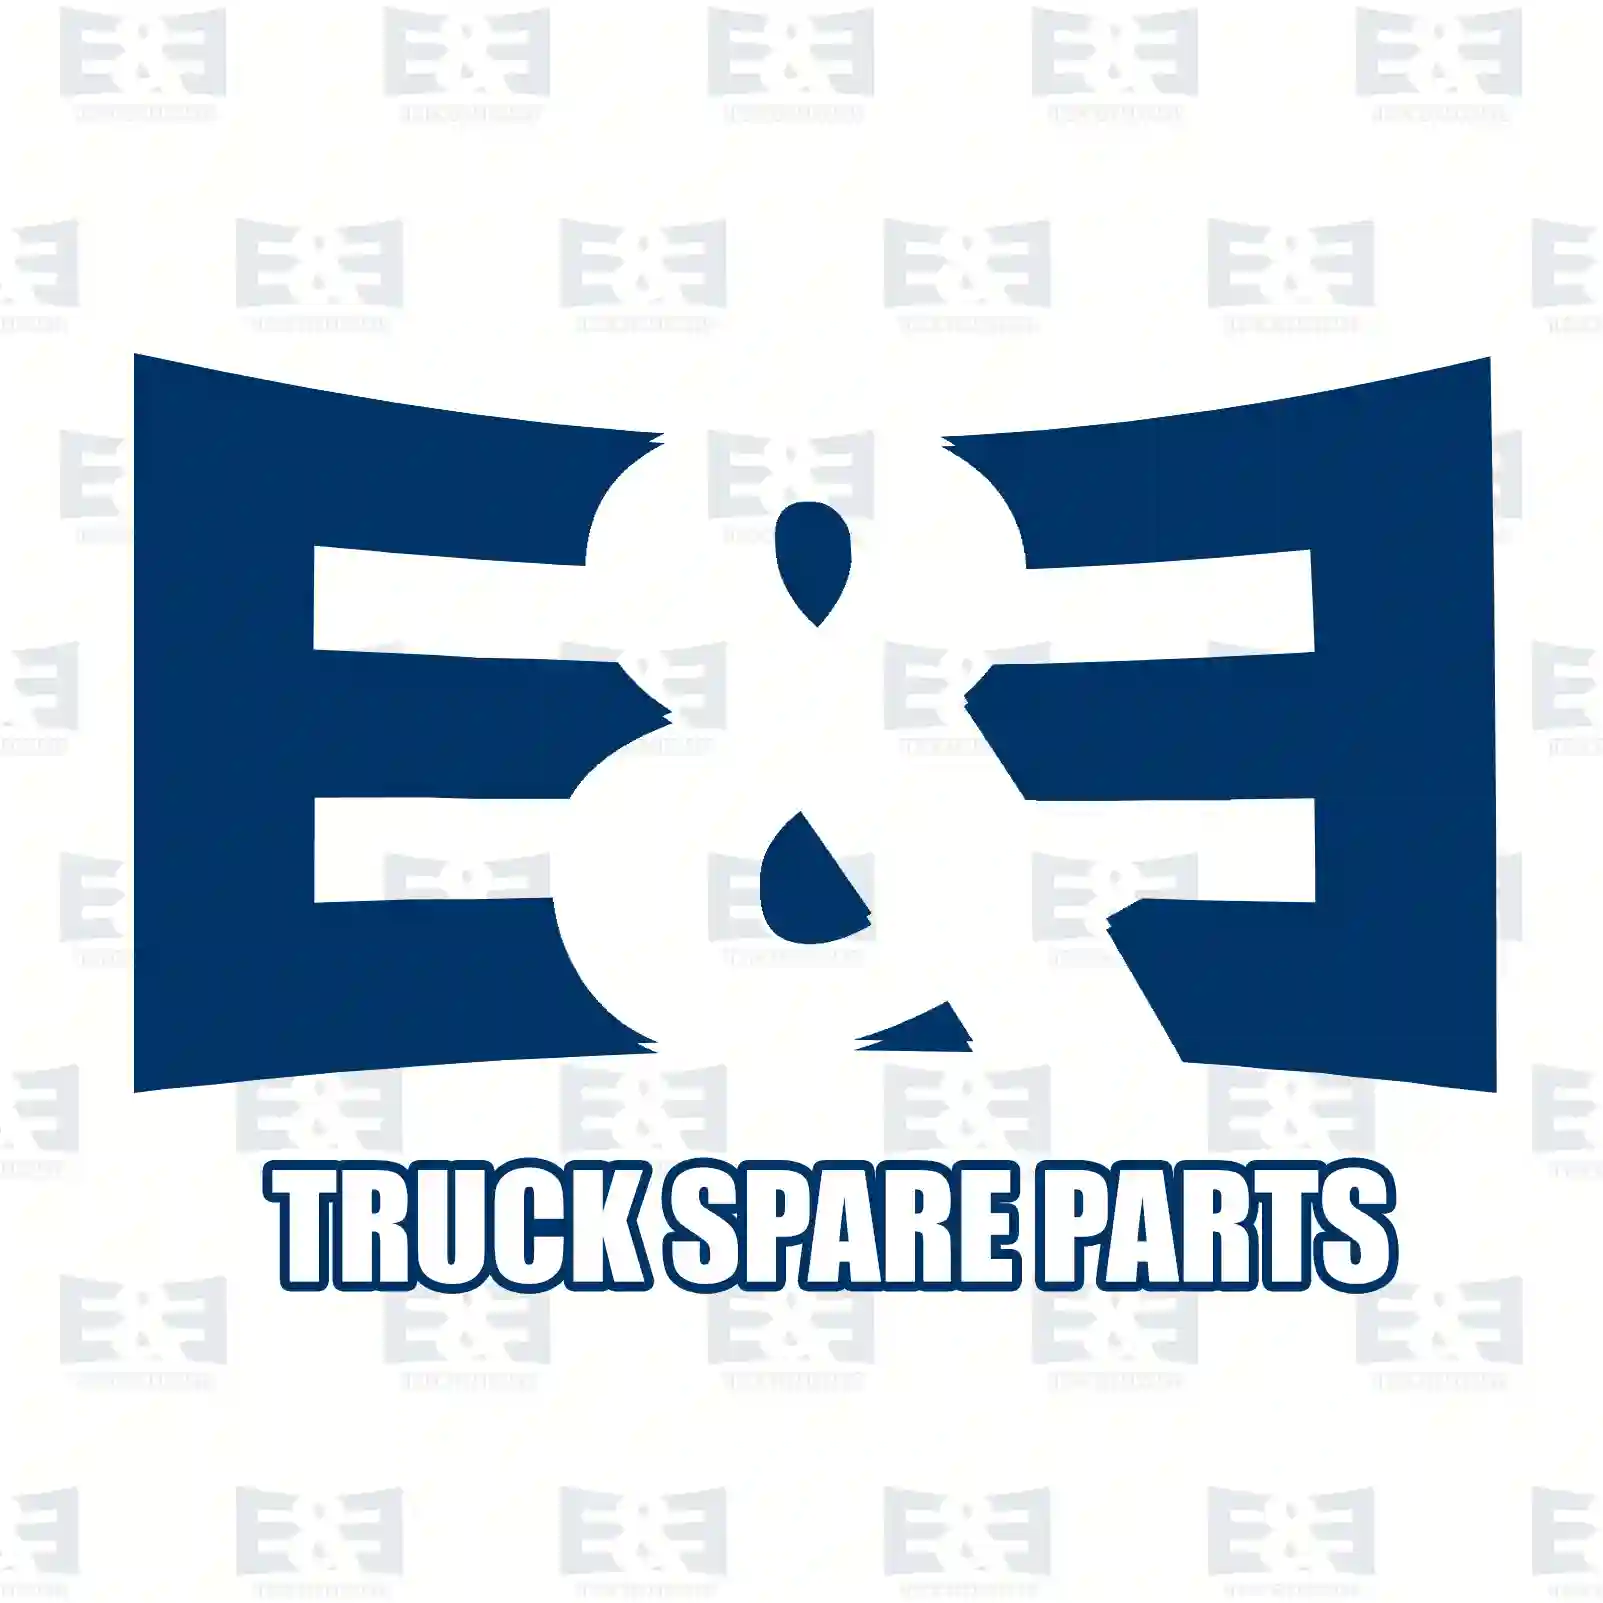 General overhaul kit, 2E2206818, 3094074 ||  2E2206818 E&E Truck Spare Parts | Truck Spare Parts, Auotomotive Spare Parts General overhaul kit, 2E2206818, 3094074 ||  2E2206818 E&E Truck Spare Parts | Truck Spare Parts, Auotomotive Spare Parts